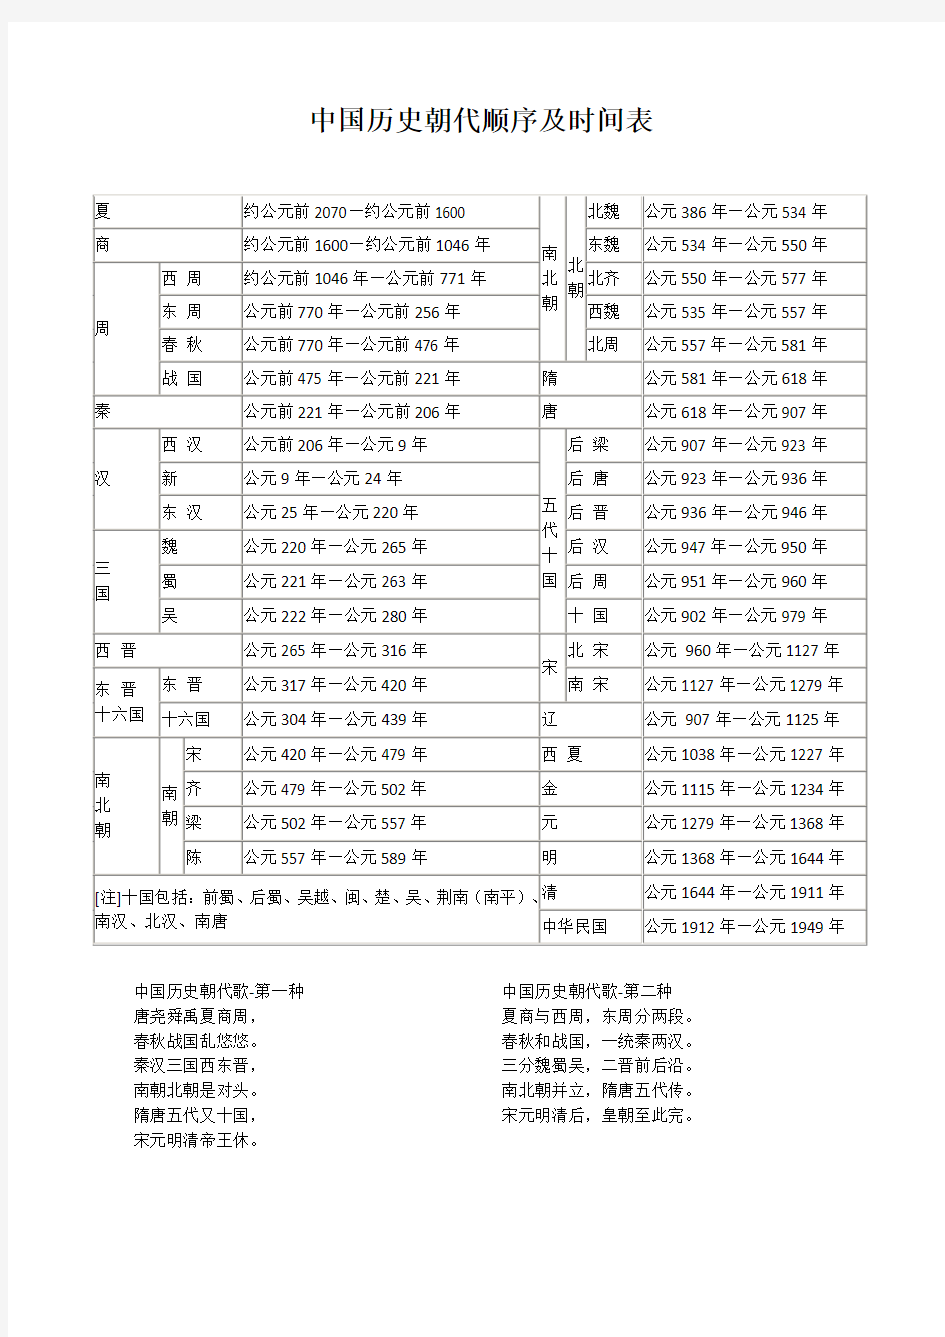 中国历史朝代顺序及时间表